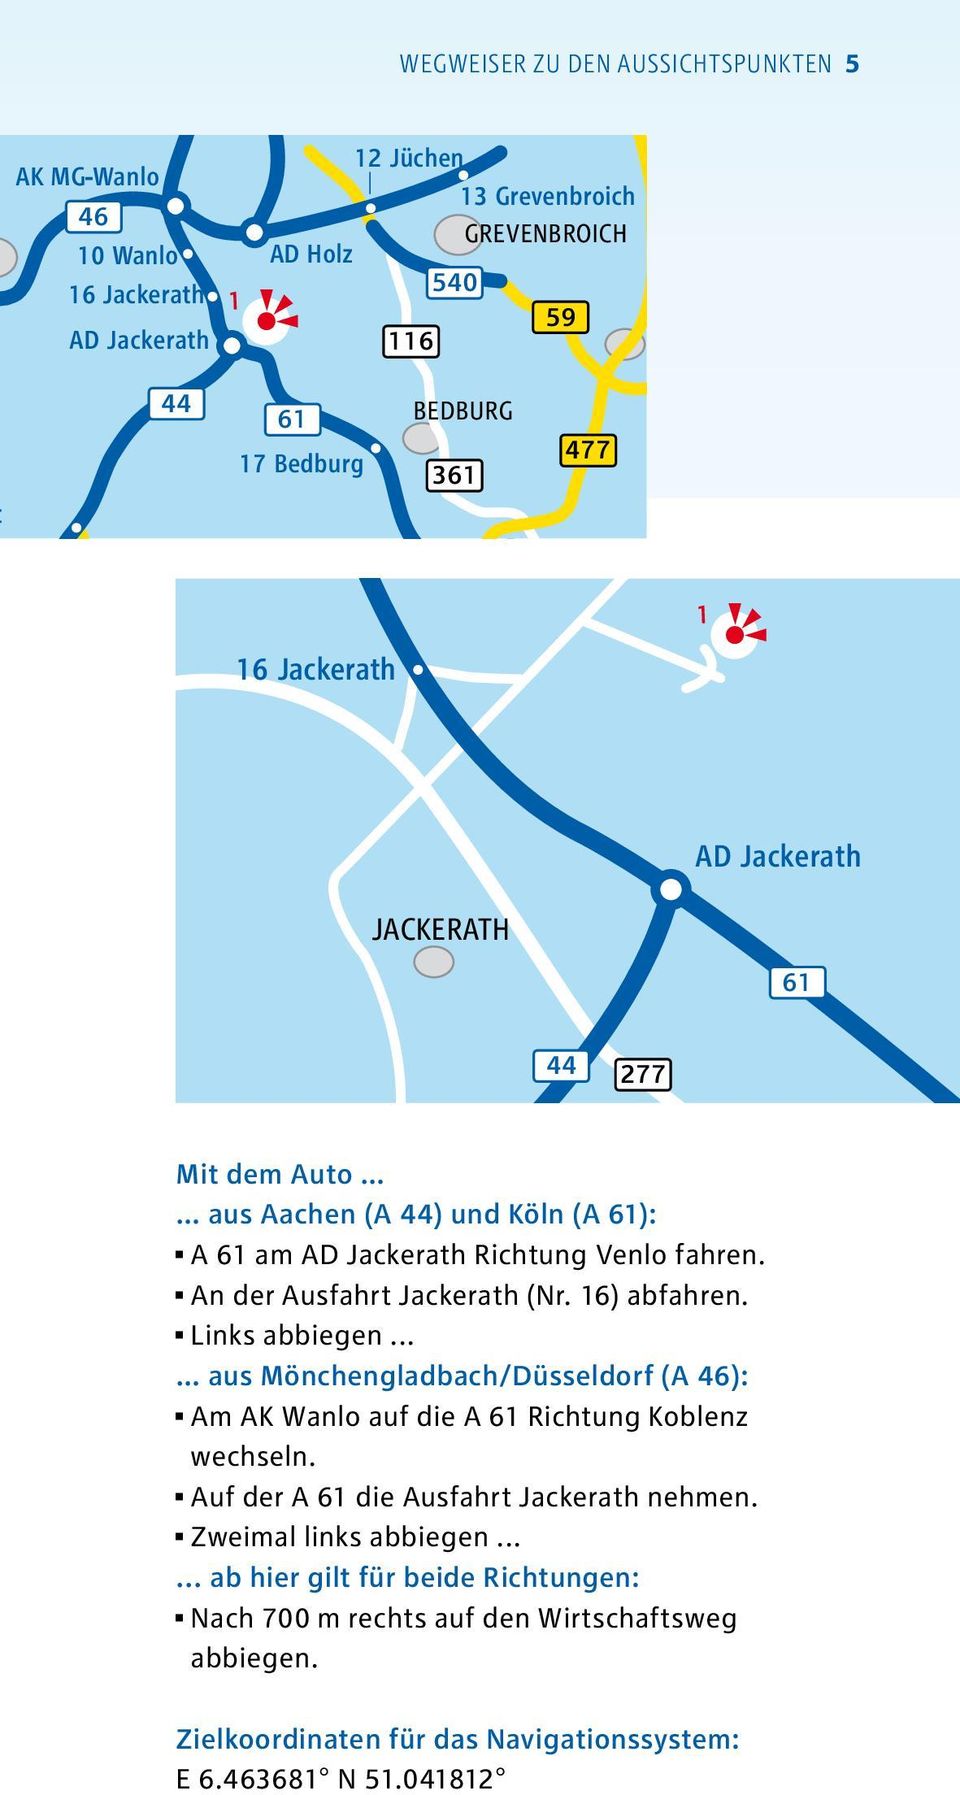 Jackerath 7 Düren 21 Türnich JACKERATH 22 Gymnich DÜREN 61 1 277 Mit dem Auto aus Aachen (A ) und Köln (A 61): A 61 am AD Jackerath Richtung Venlo fahren. An der Ausfahrt Jackerath (Nr. 16) abfahren.